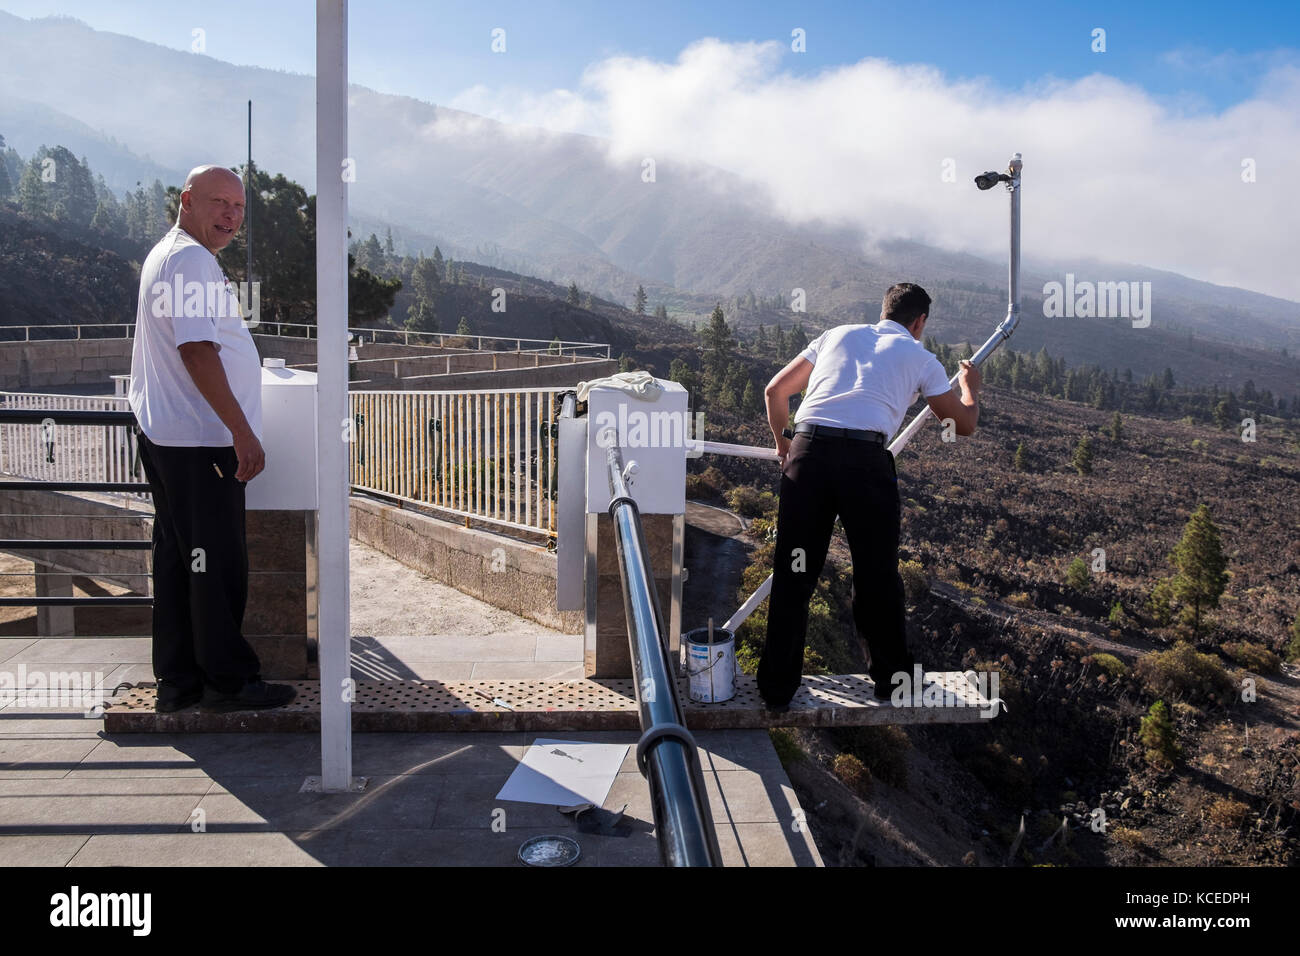 Vivere pericolosamente, uomo controbilanciare una piastra metallica sulla quale un altro uomo sovrasta una terrazza per la verniciatura di un supporto per una telecamera TVCC, Tenerife, Canarie Foto Stock